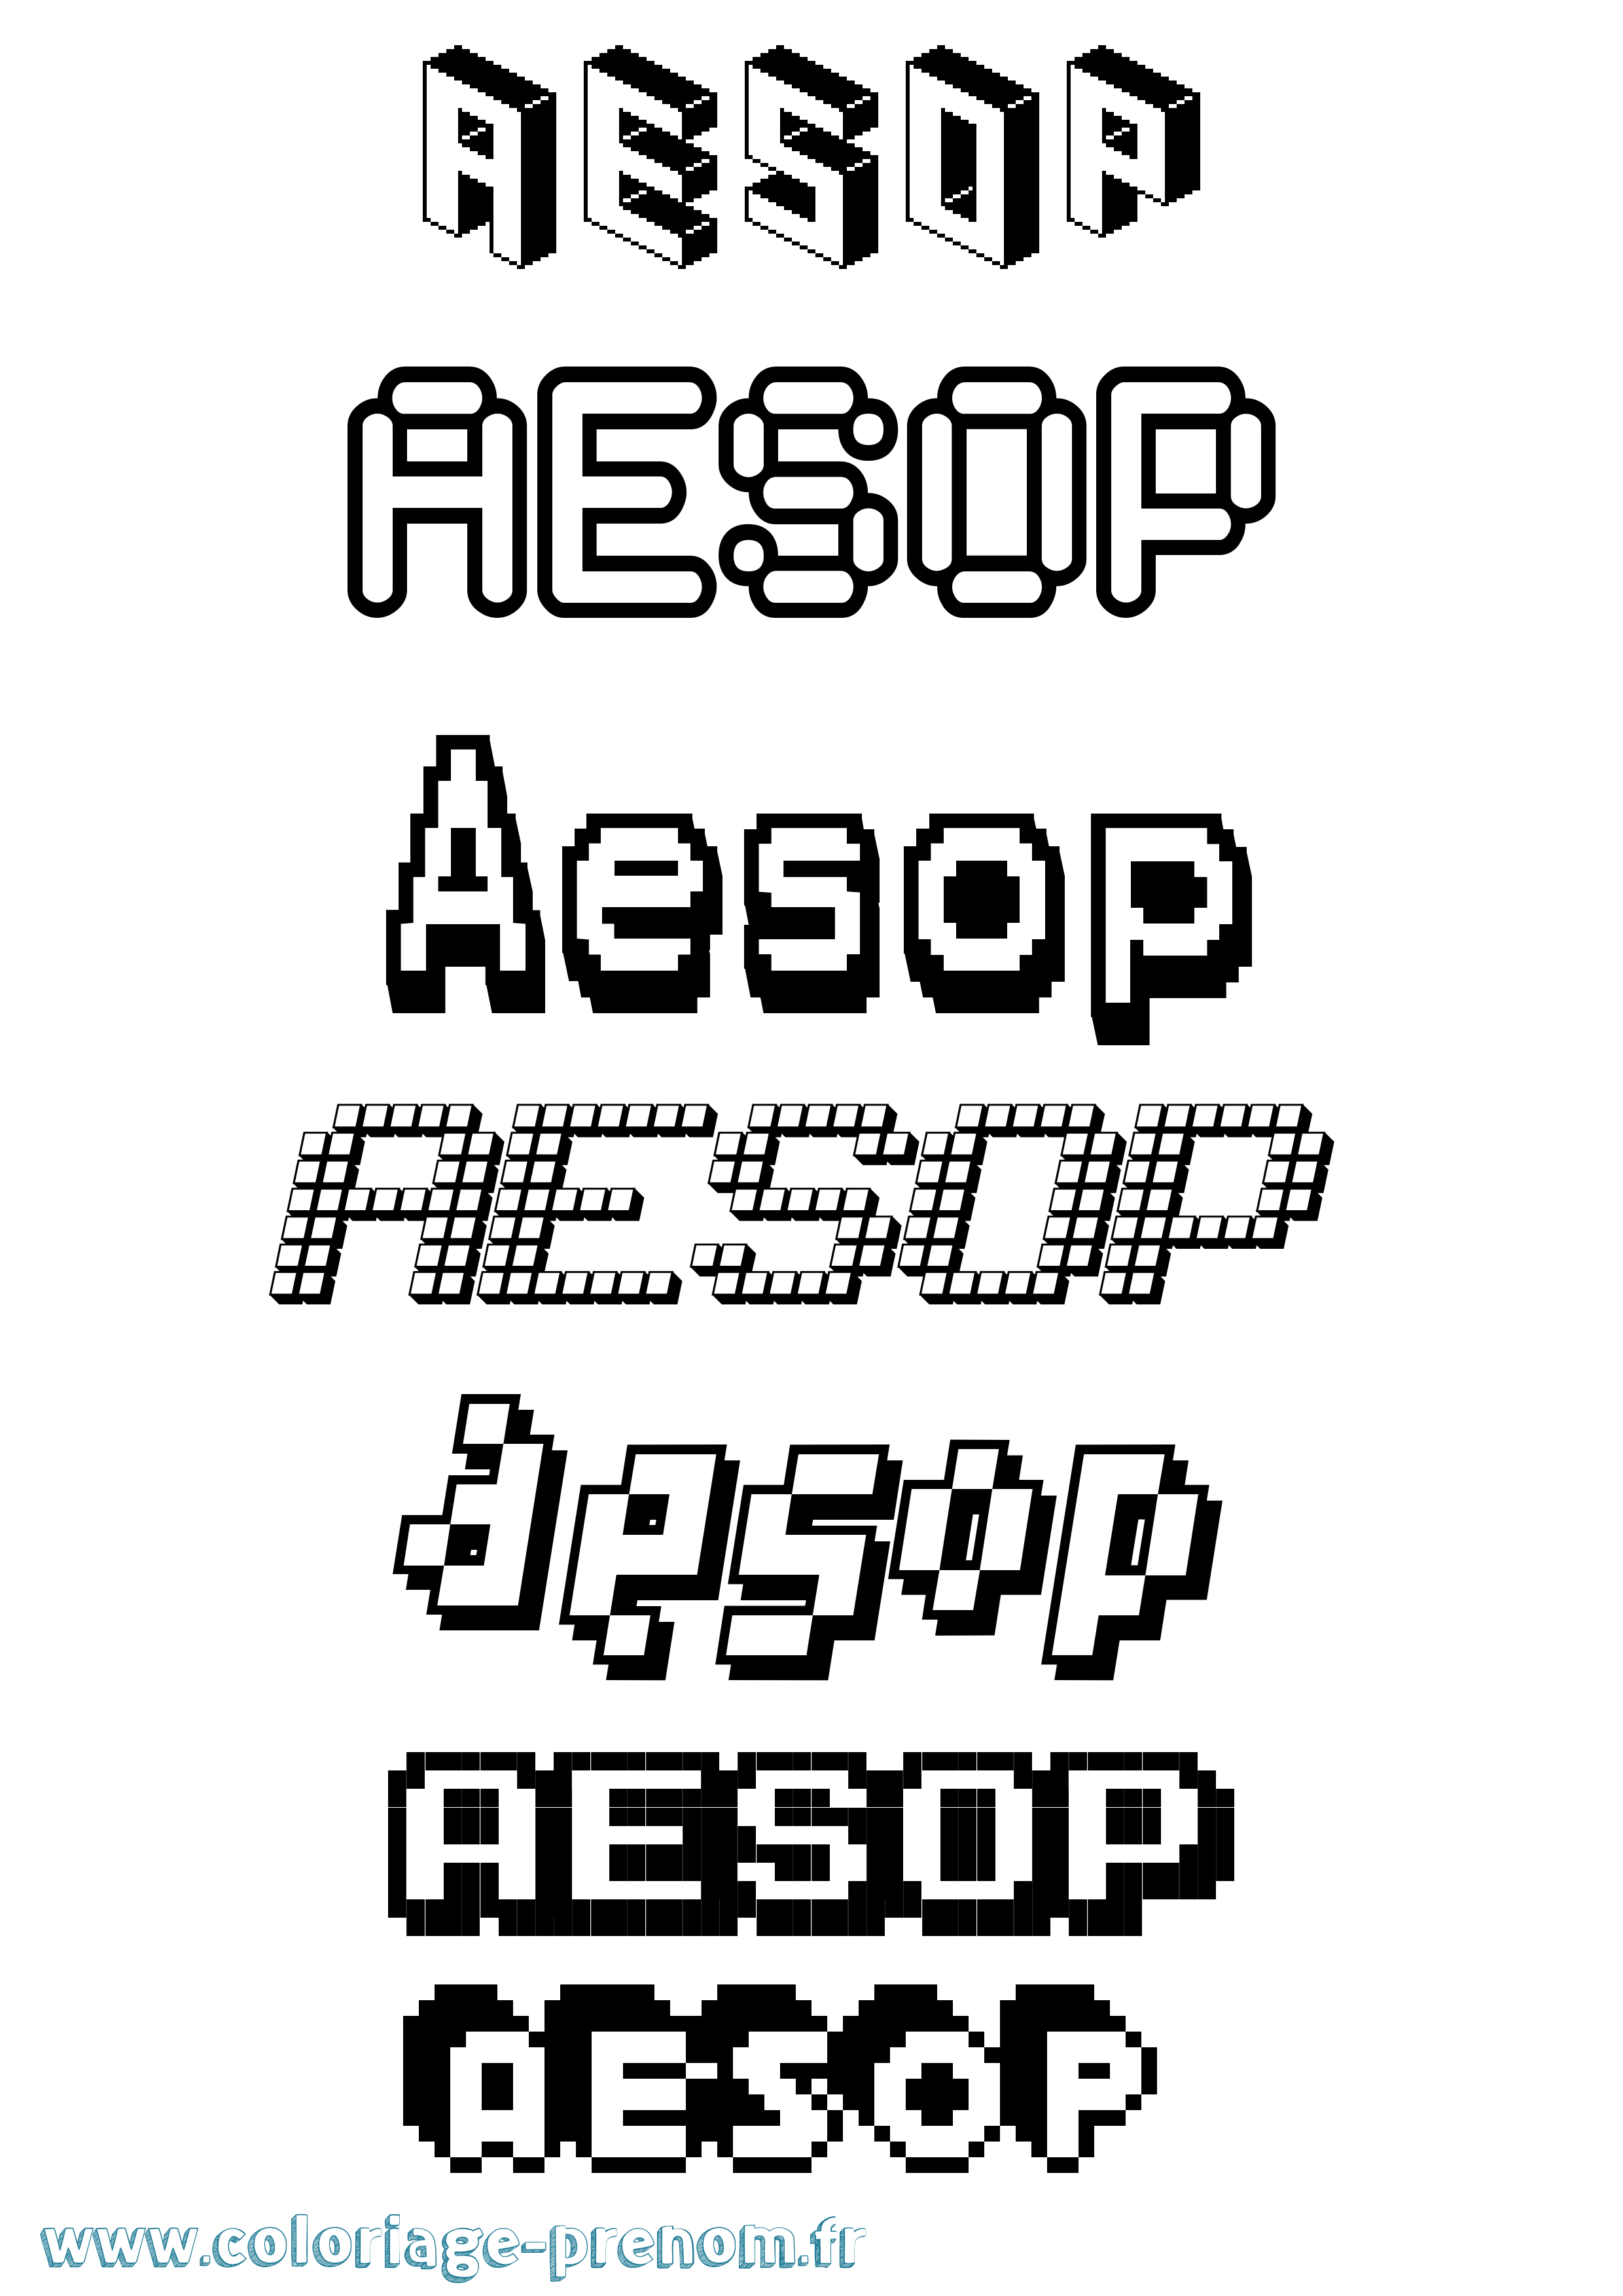 Coloriage prénom Aesop Pixel